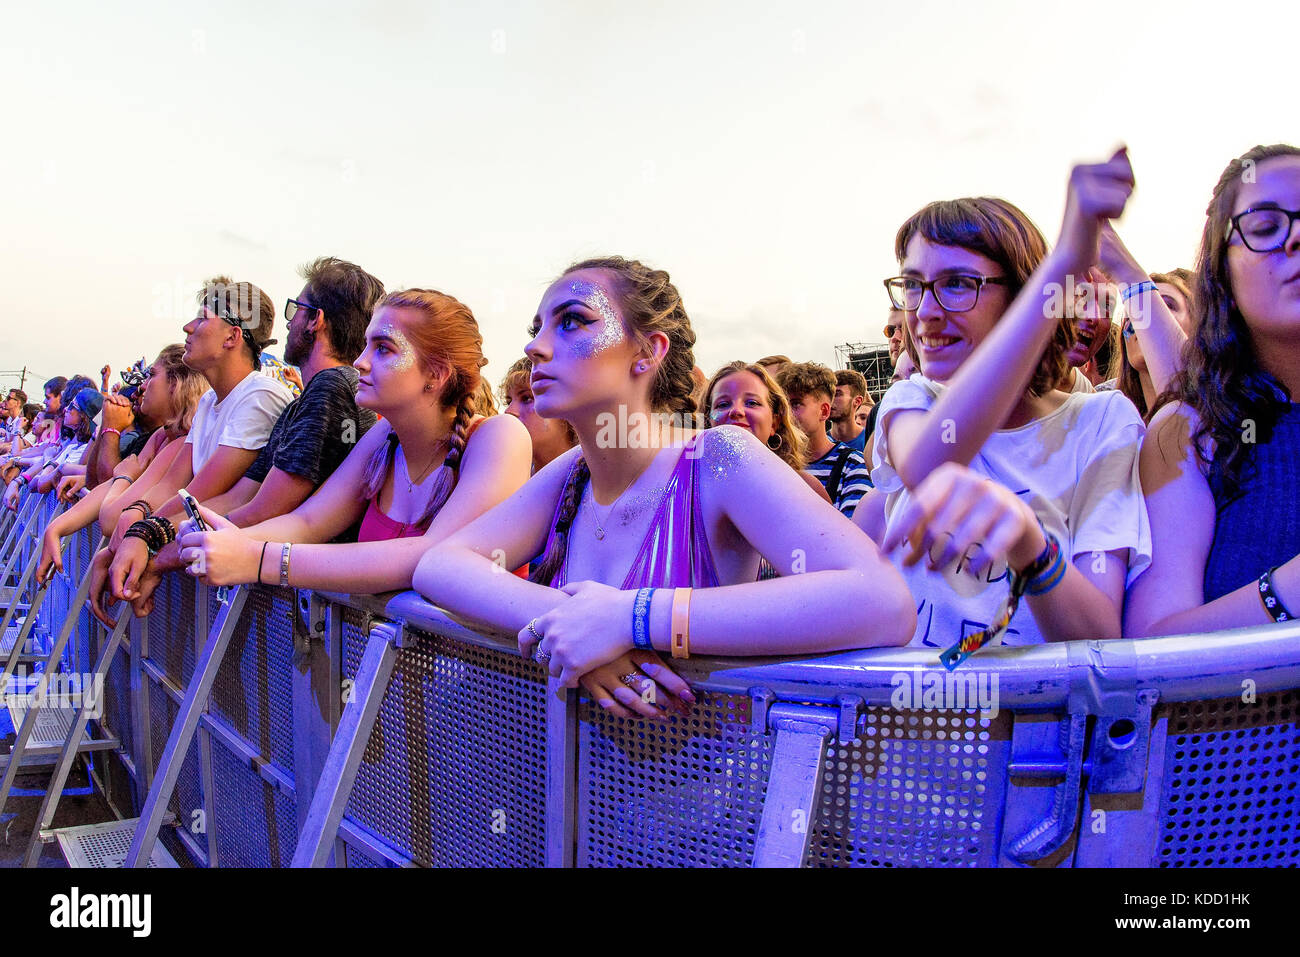 BENICASSIM, ESPAGNE - 13 juil : foule lors d'un concert au Festival de Musique le 13 juillet 2017 à Benicassim, Espagne. Banque D'Images